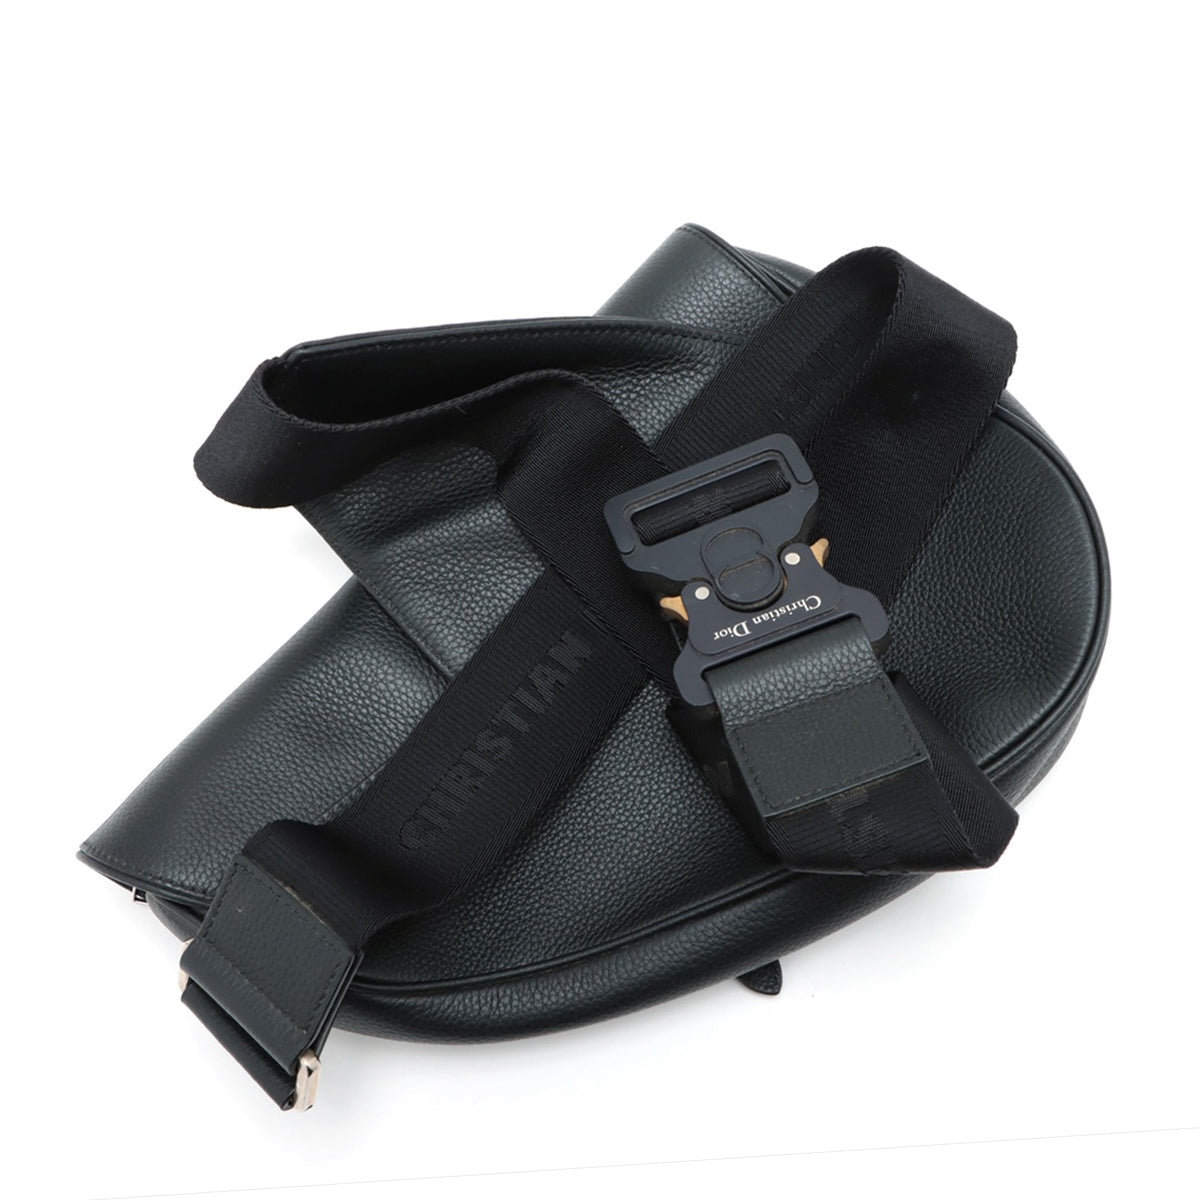 DIOR Saddle Leather Shoulder bag Black open papers